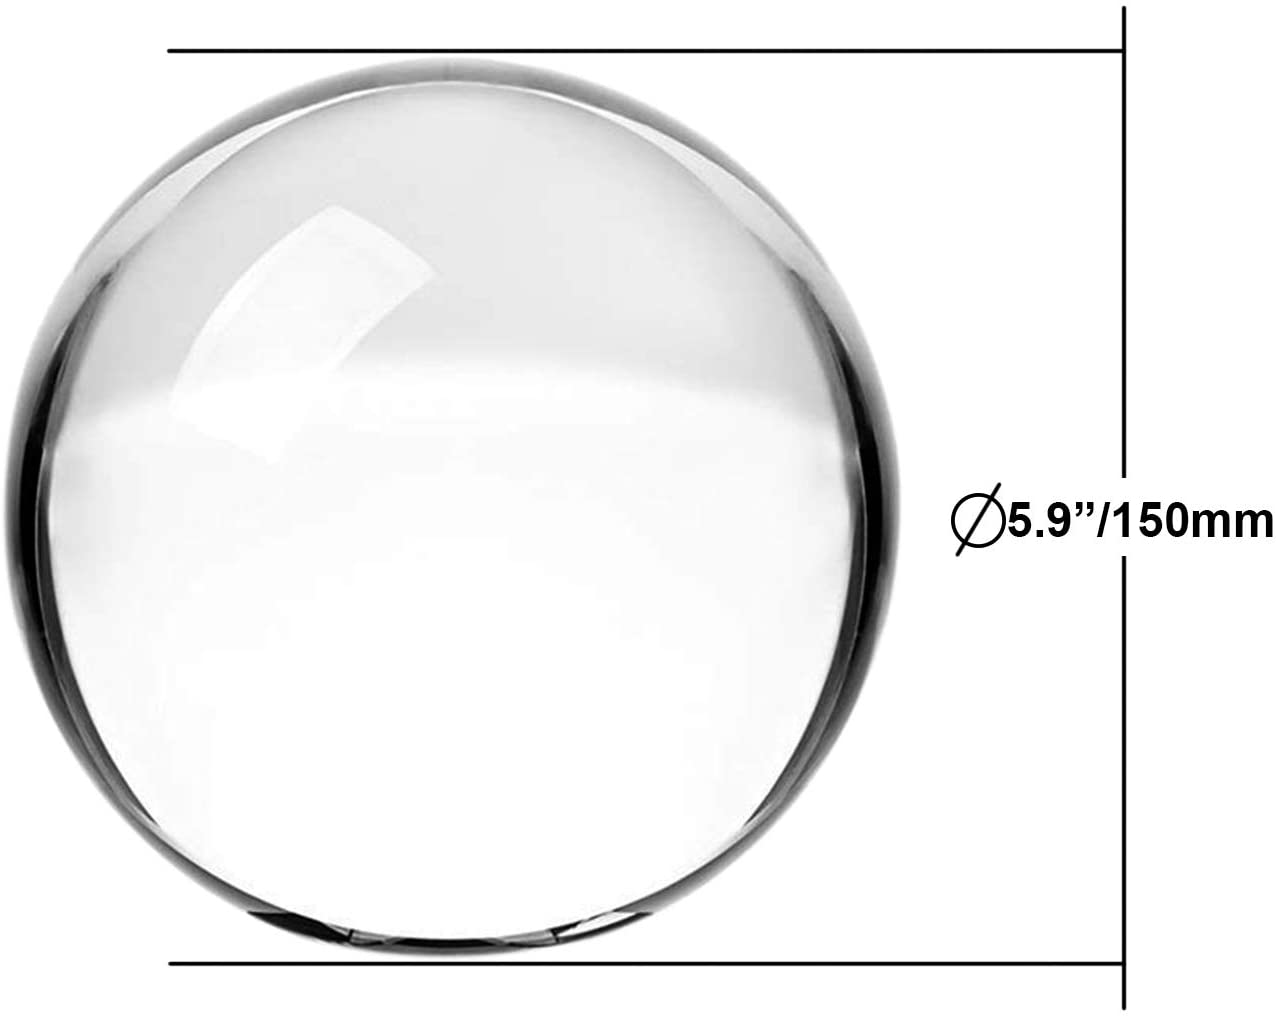 K9 Boule De Cristal Sphères Réfléchissantes En Verre Optique - Temu Belgium